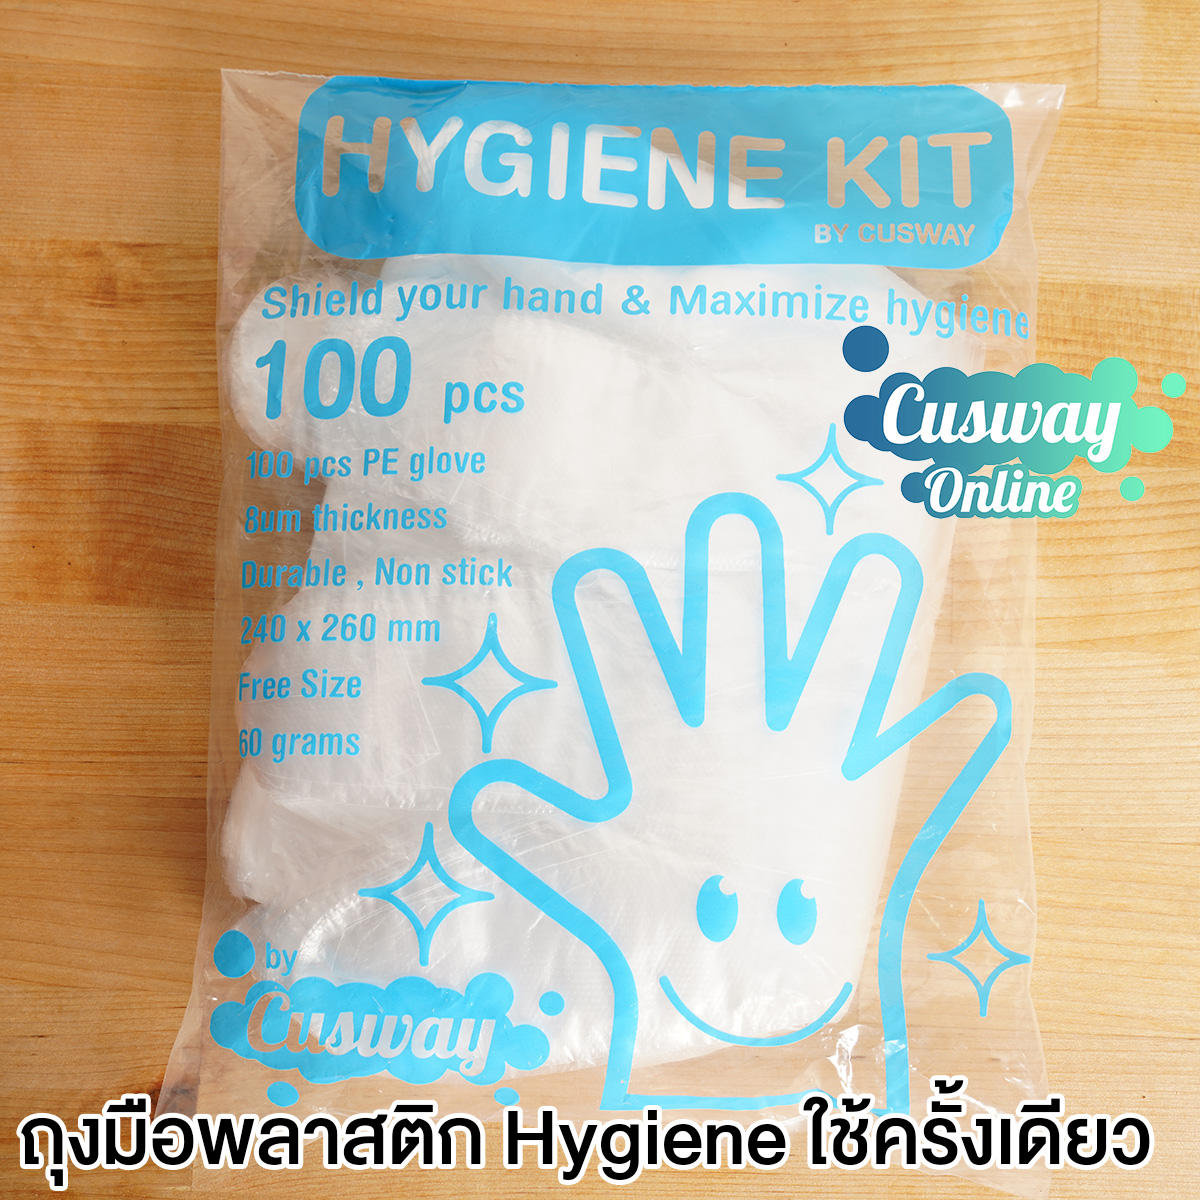 ถุงมือ ถุงมือพลาสติกสำหรับ ทำความสะอาดและใช้ในบ้าน ถุงมือพลาสติก ถุงมือPP ถุงมือใช้แล้วทิ้ง